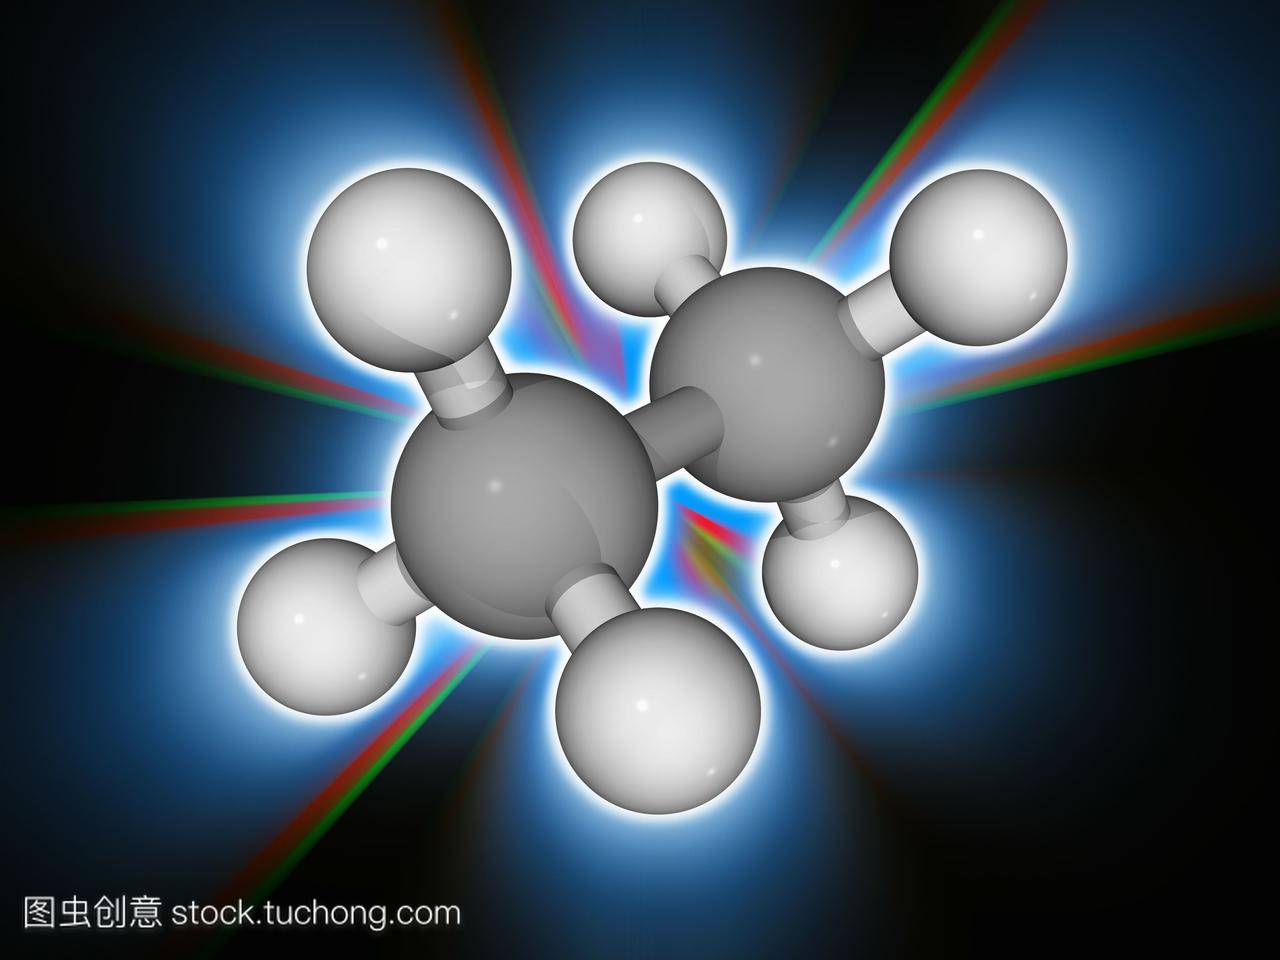 乙烷。烃链烷烃c2h6的分子模型。这种无色无